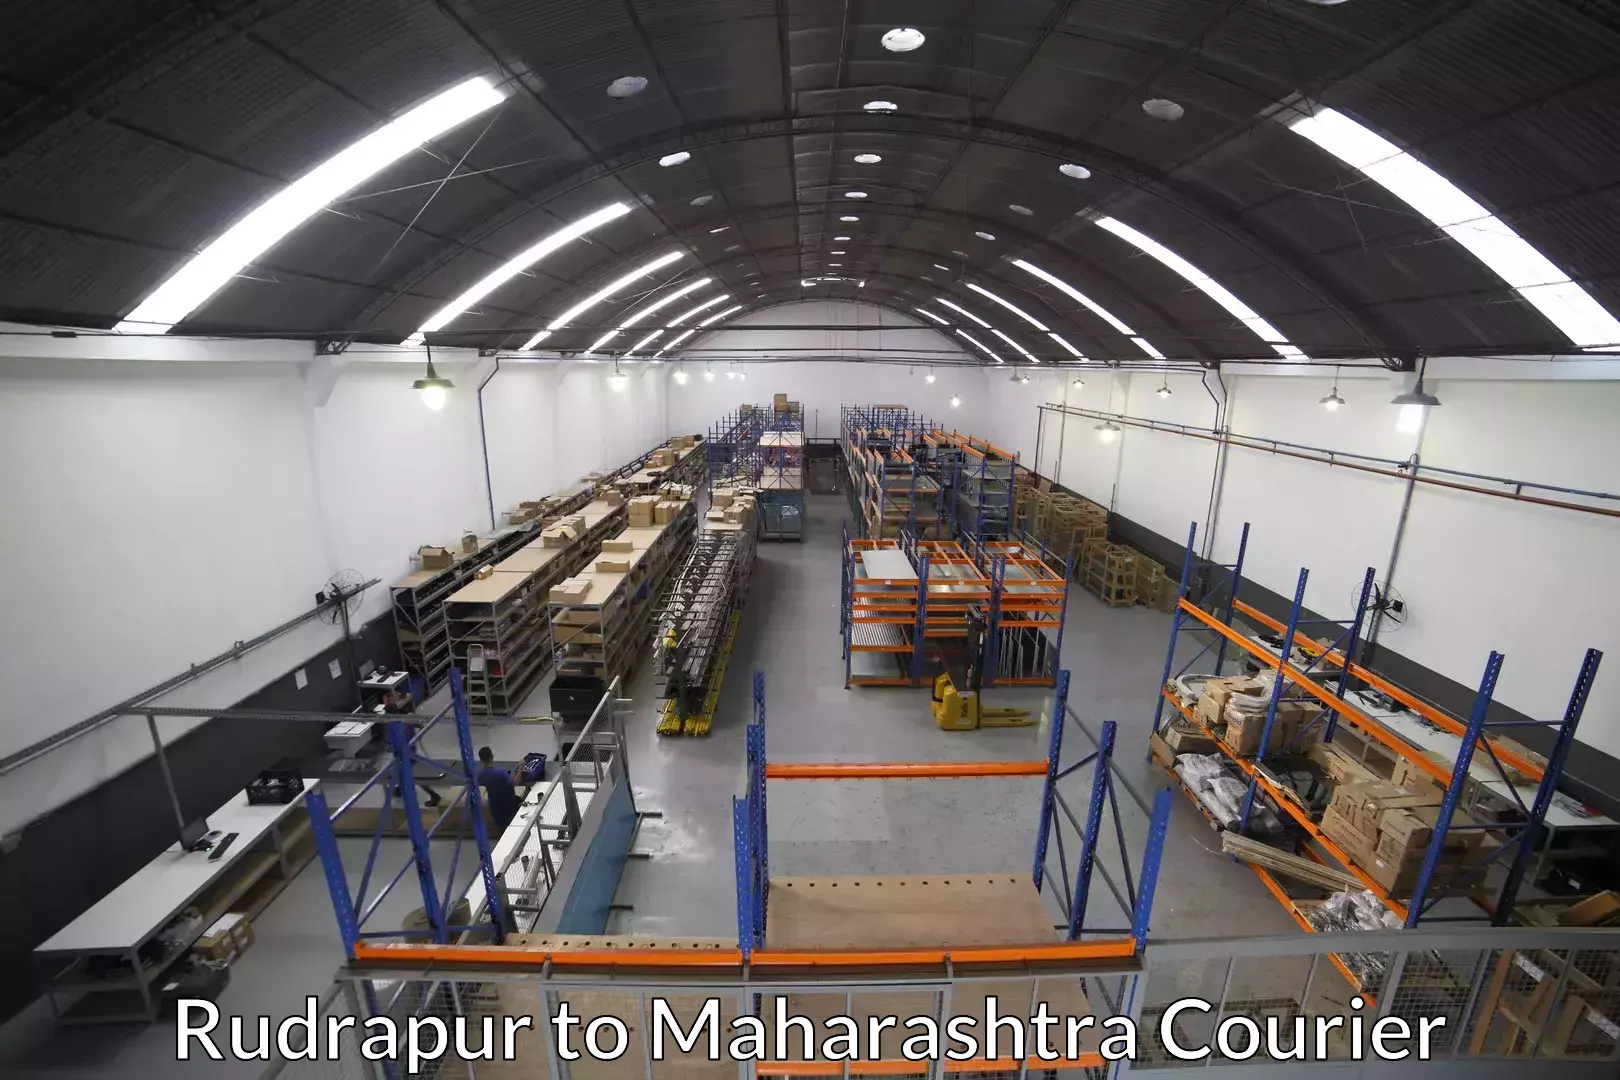 Furniture transport solutions Rudrapur to Mumbai